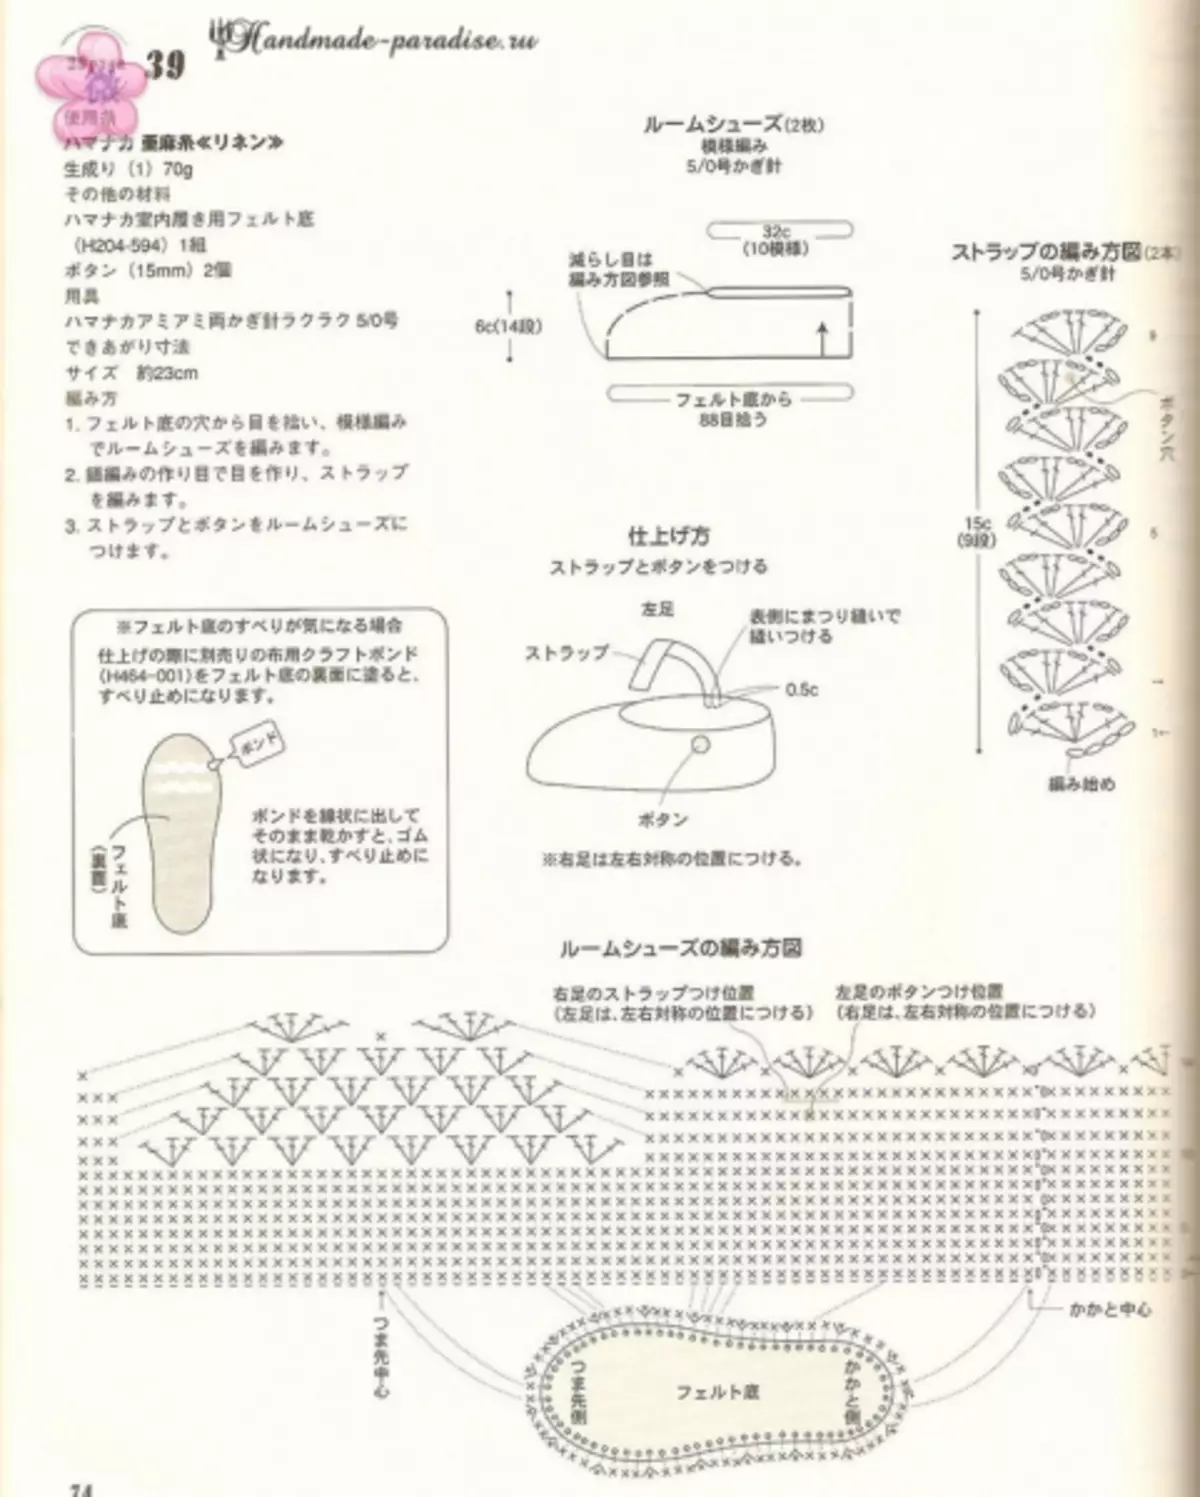 Καλοκαιρινά αξεσουάρ βελονάκι. Ιαπωνικό περιοδικό με συστήματα